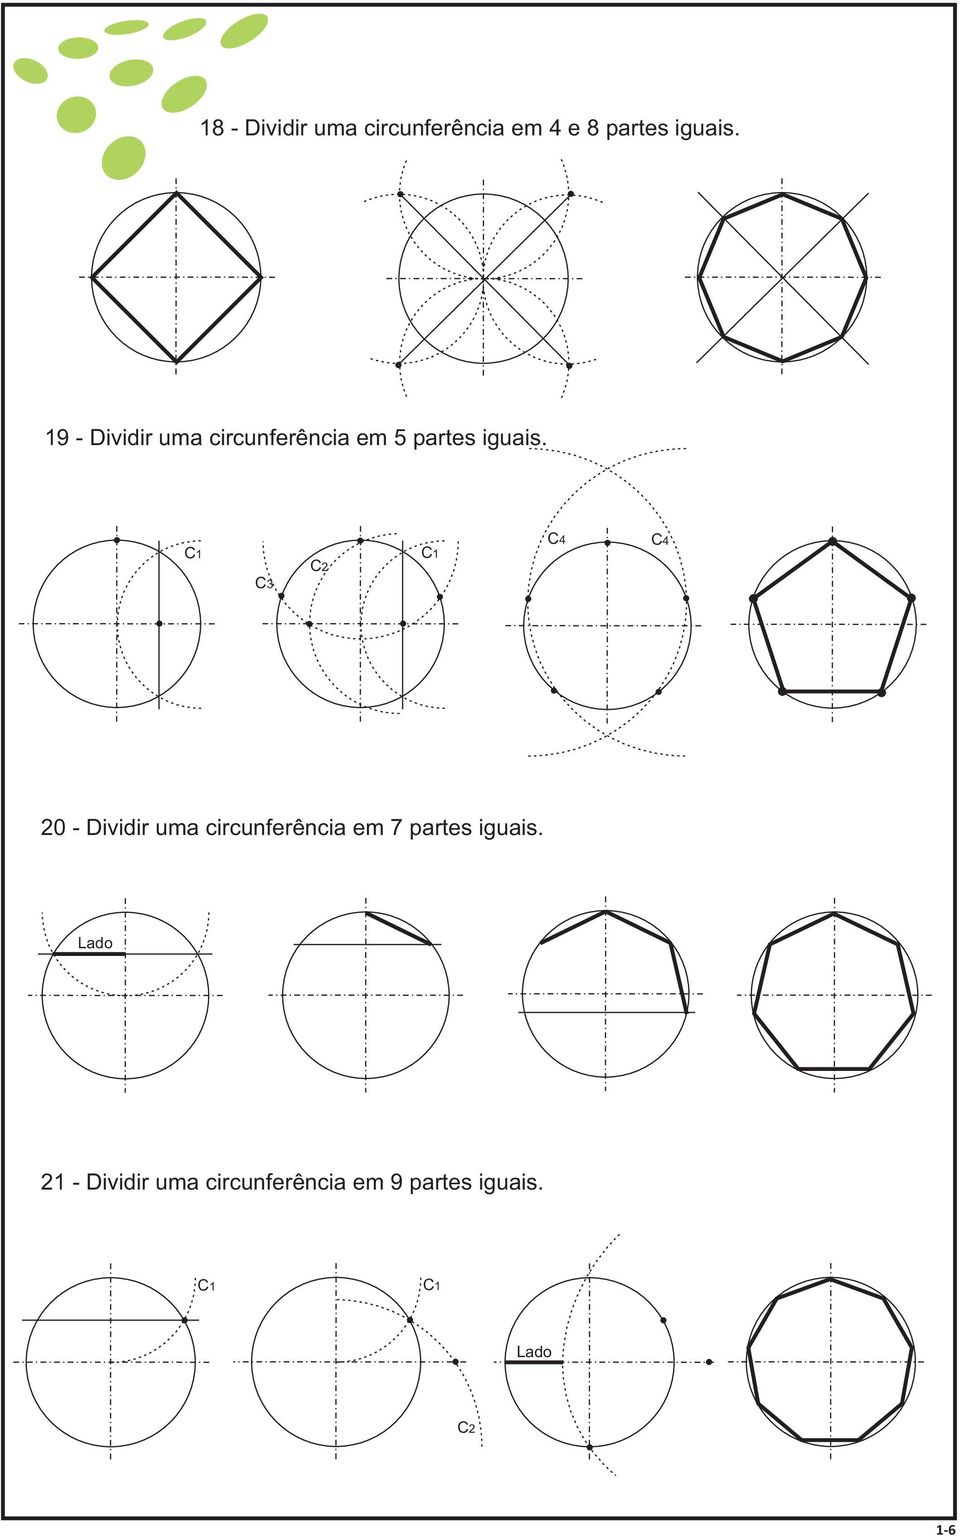 C1 C3 C2 C1 C4 C4 20 - Dividir uma circunferência em 7 partes